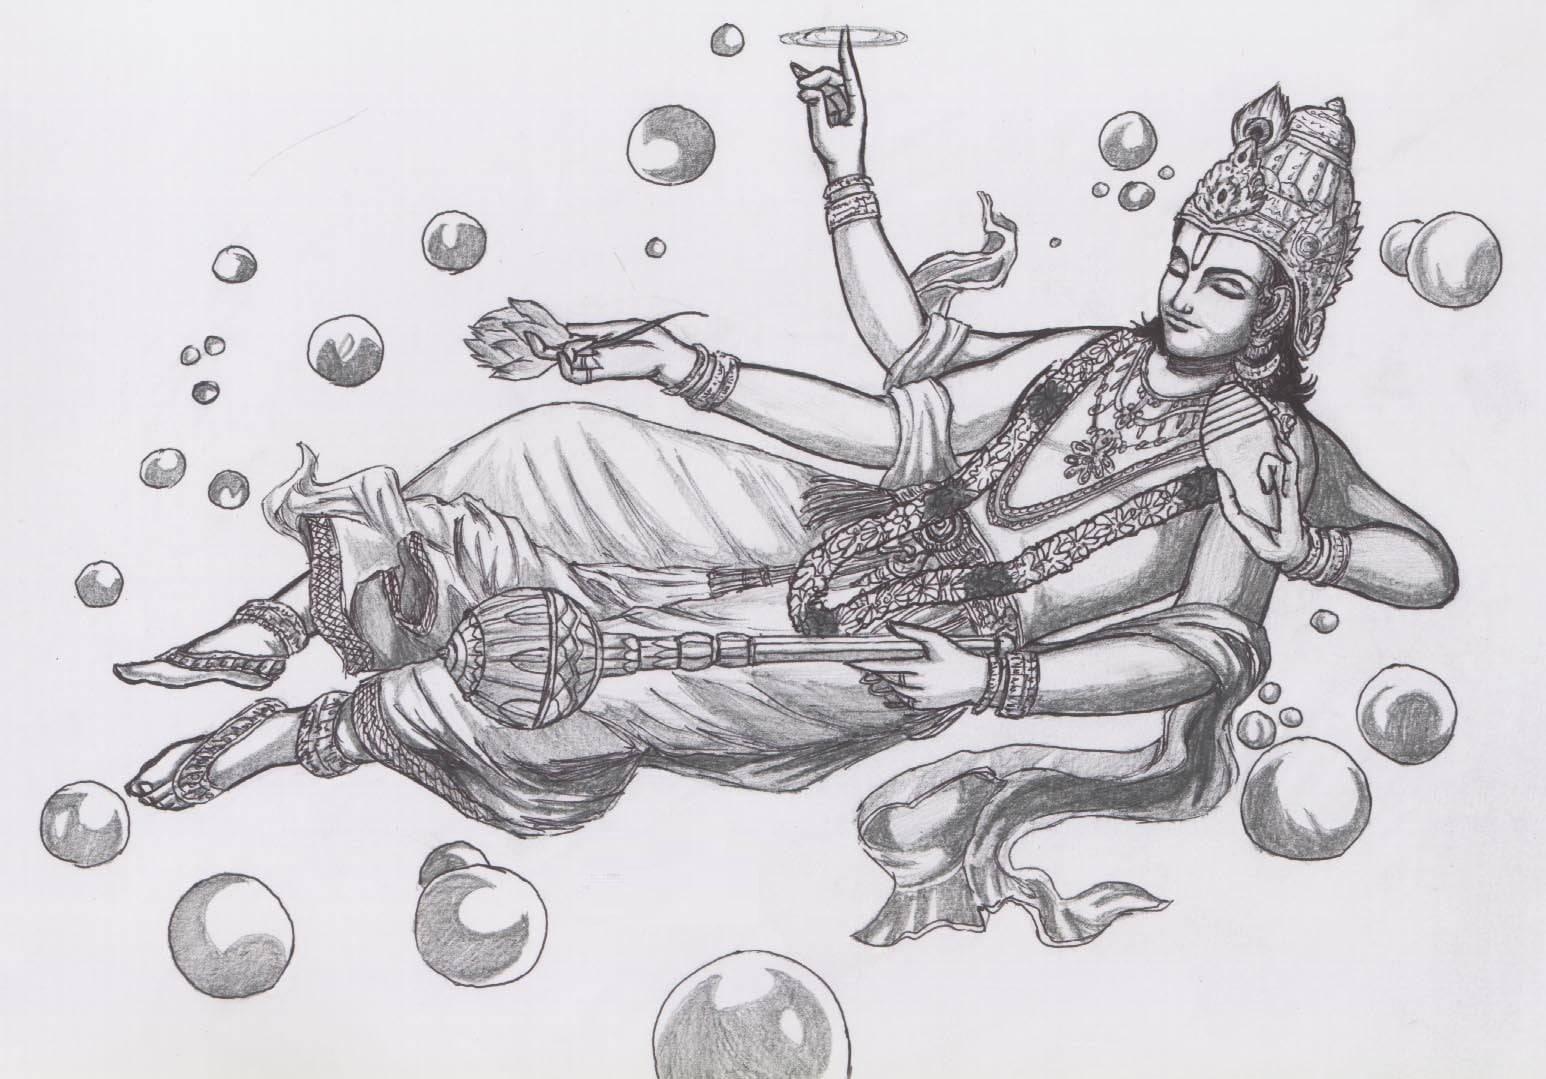 Lord Vishnu's Avatars - Art by Yashnashree,9, Bangalore